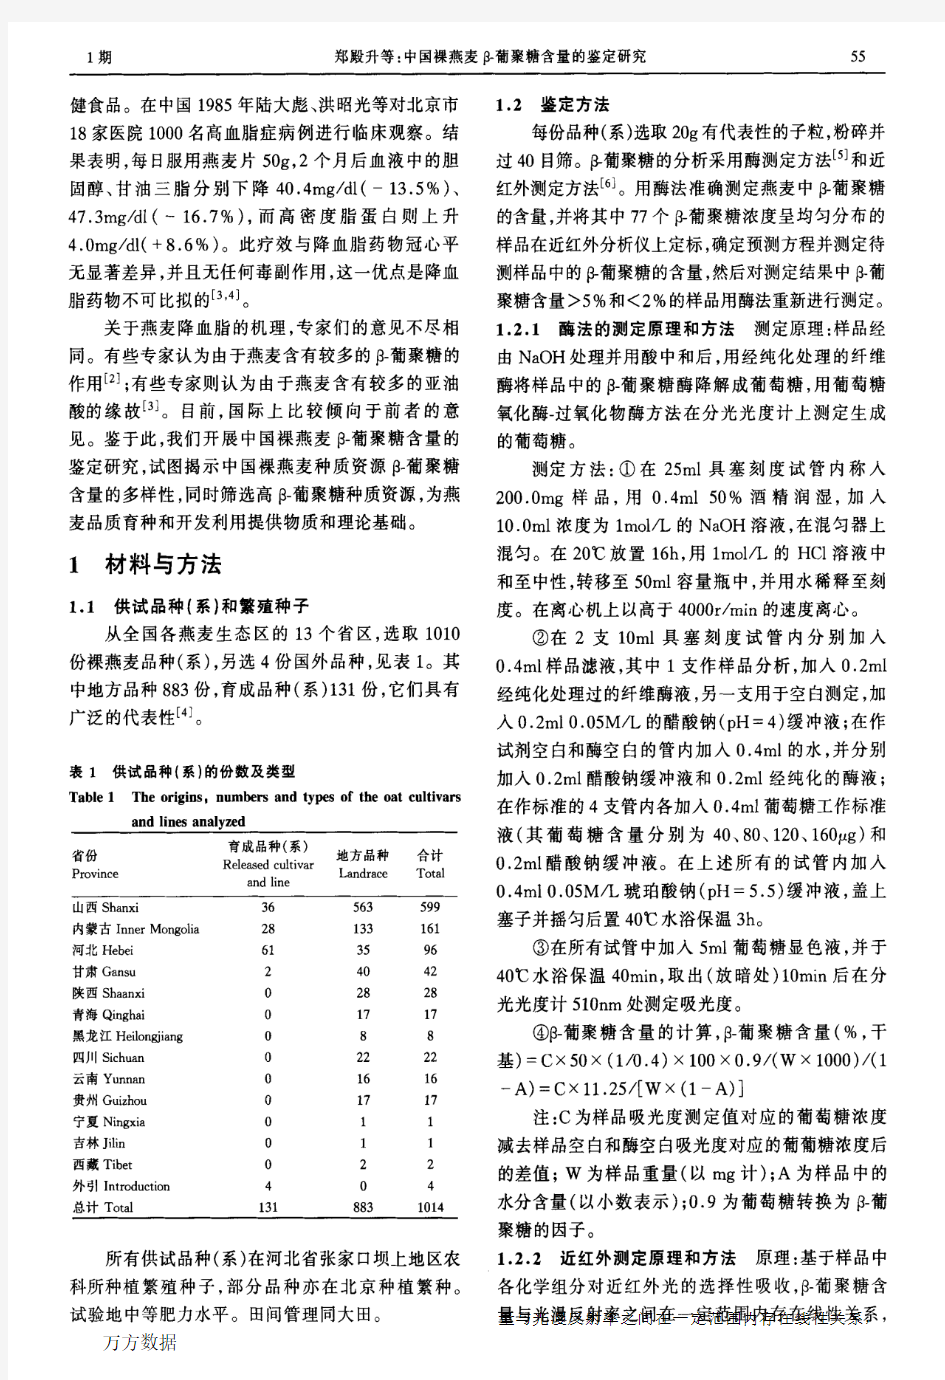 中国裸燕麦β-葡聚糖含量的鉴定研究